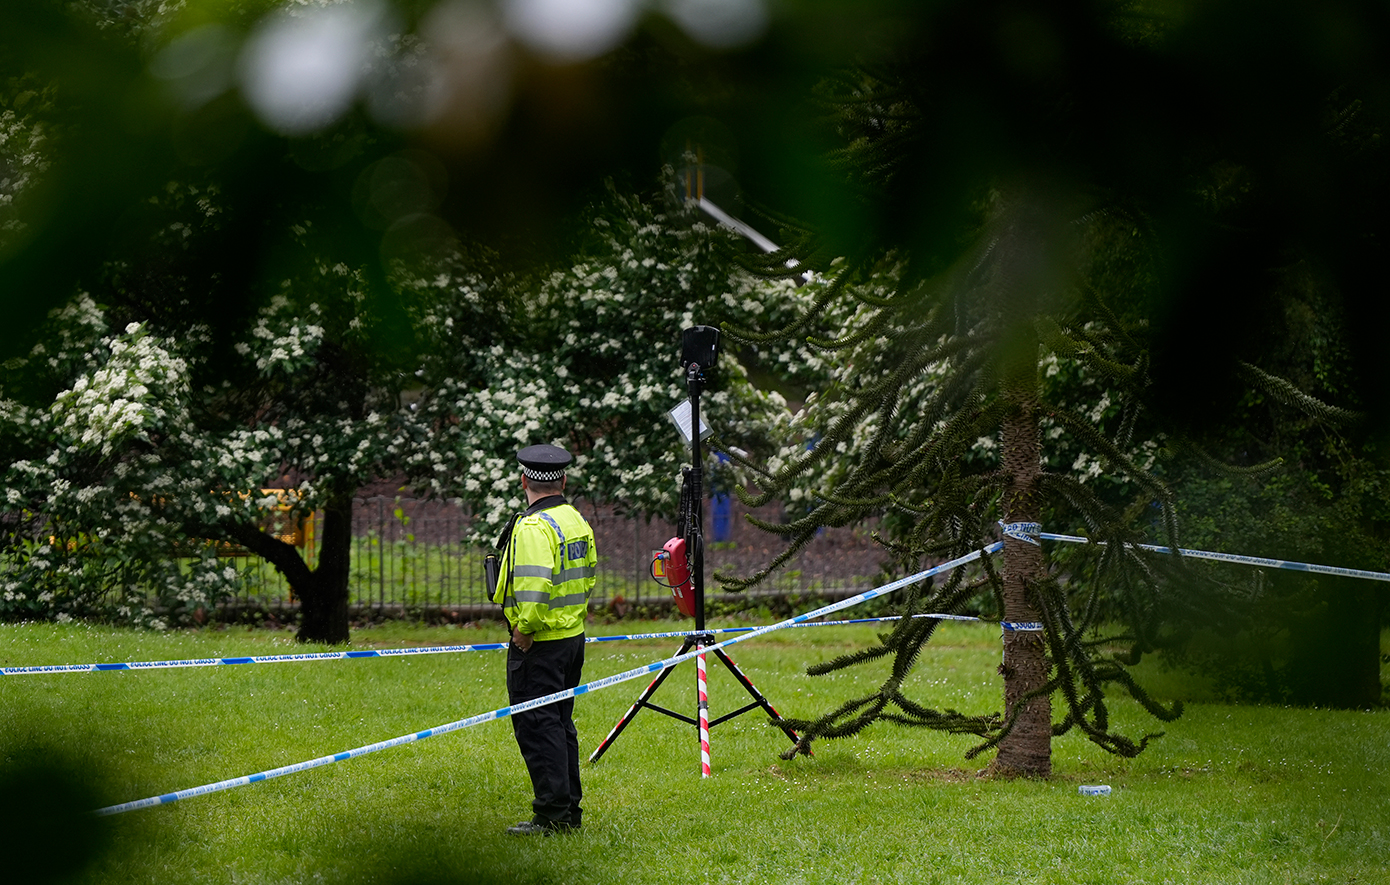 Βρετανία: Η αστυνομία βρήκε τρία παιδιά που αγνοούνταν έπειτα από ταξίδι σε πάρκο ψυχαγωγίας